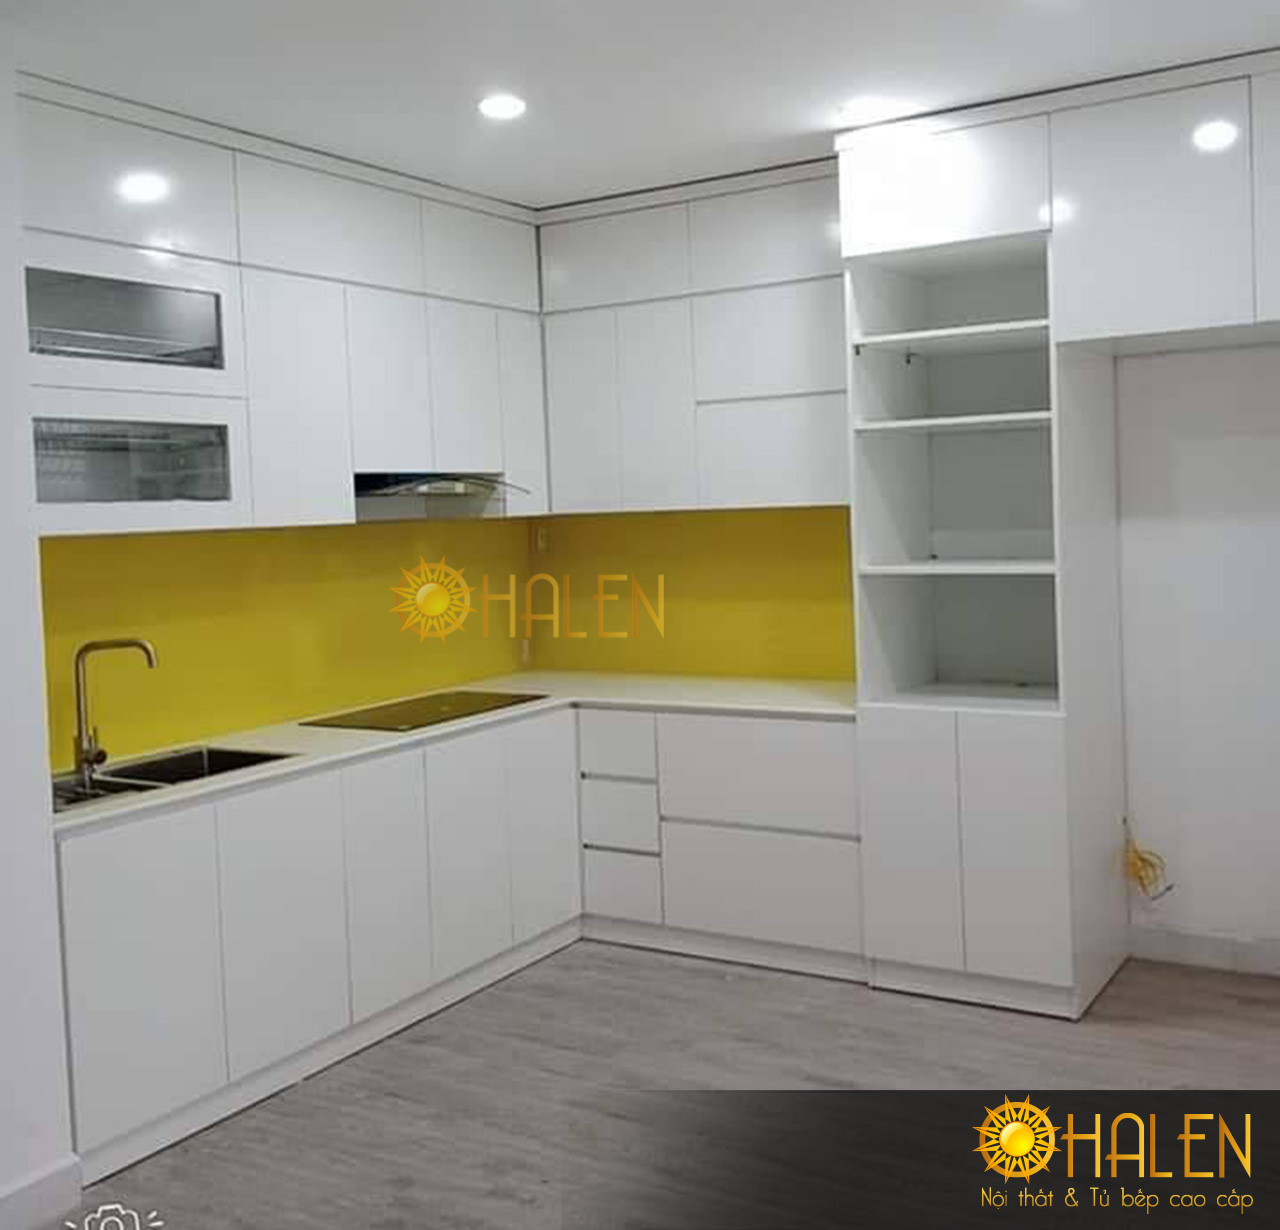 Mẫu tủ bếp Melamine màu trắng sử dụng kính bếp màu vàng làm điểm nhấn